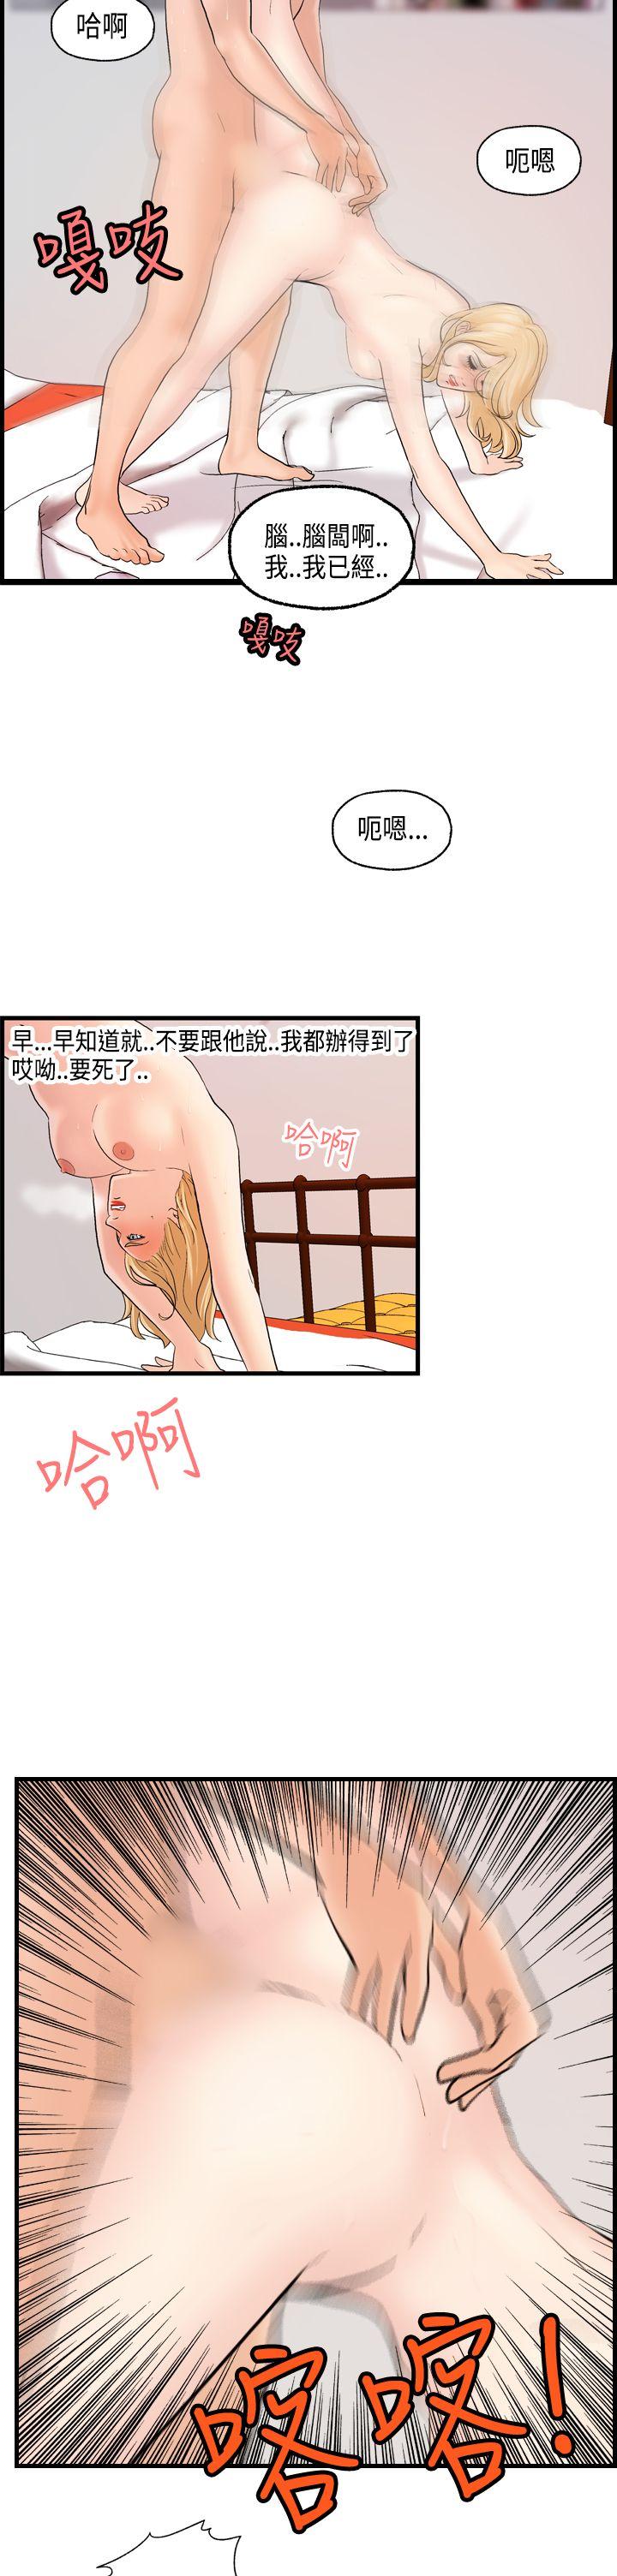 韩国污漫画 激情分享屋(完結) 第21话 19